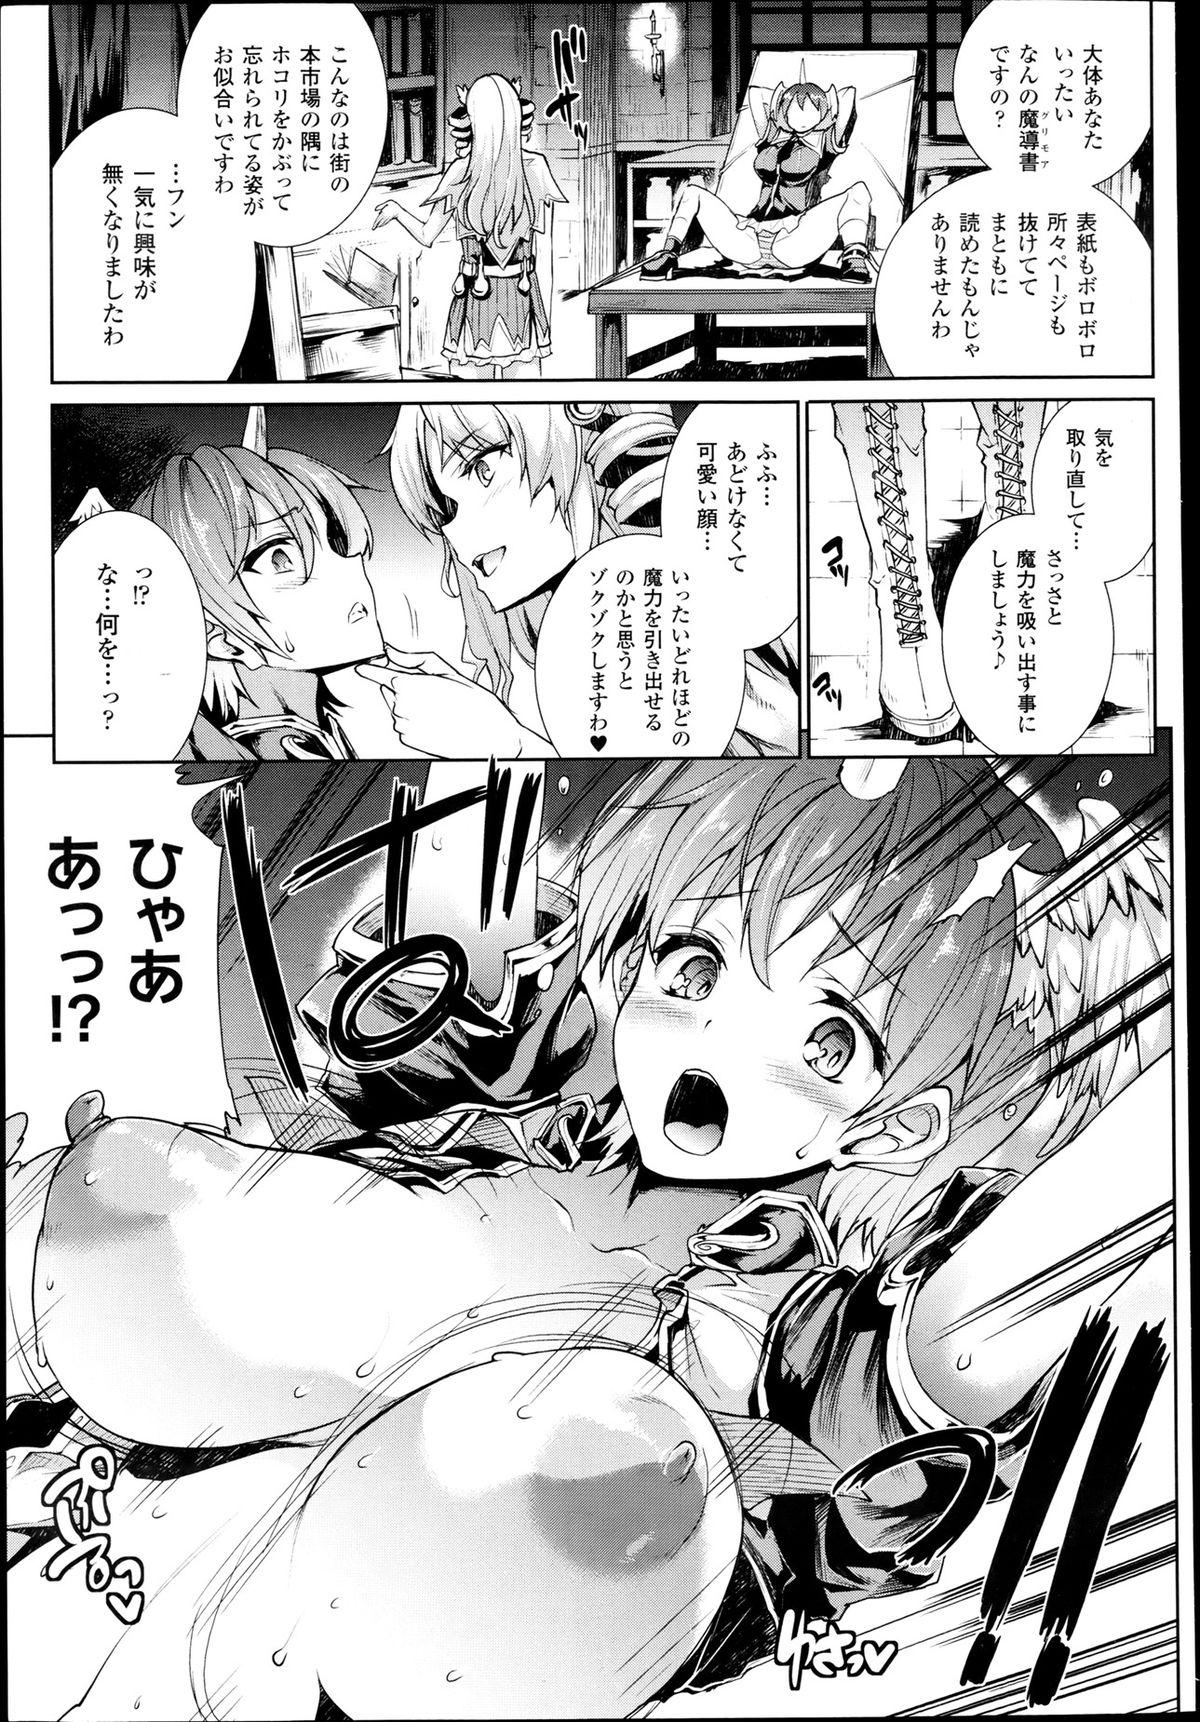 Piss [Erect Sawaru] Shinkyoku no Grimoire -PANDRA saga 2nd story- Ch 07-9.5 Threesome - Page 11